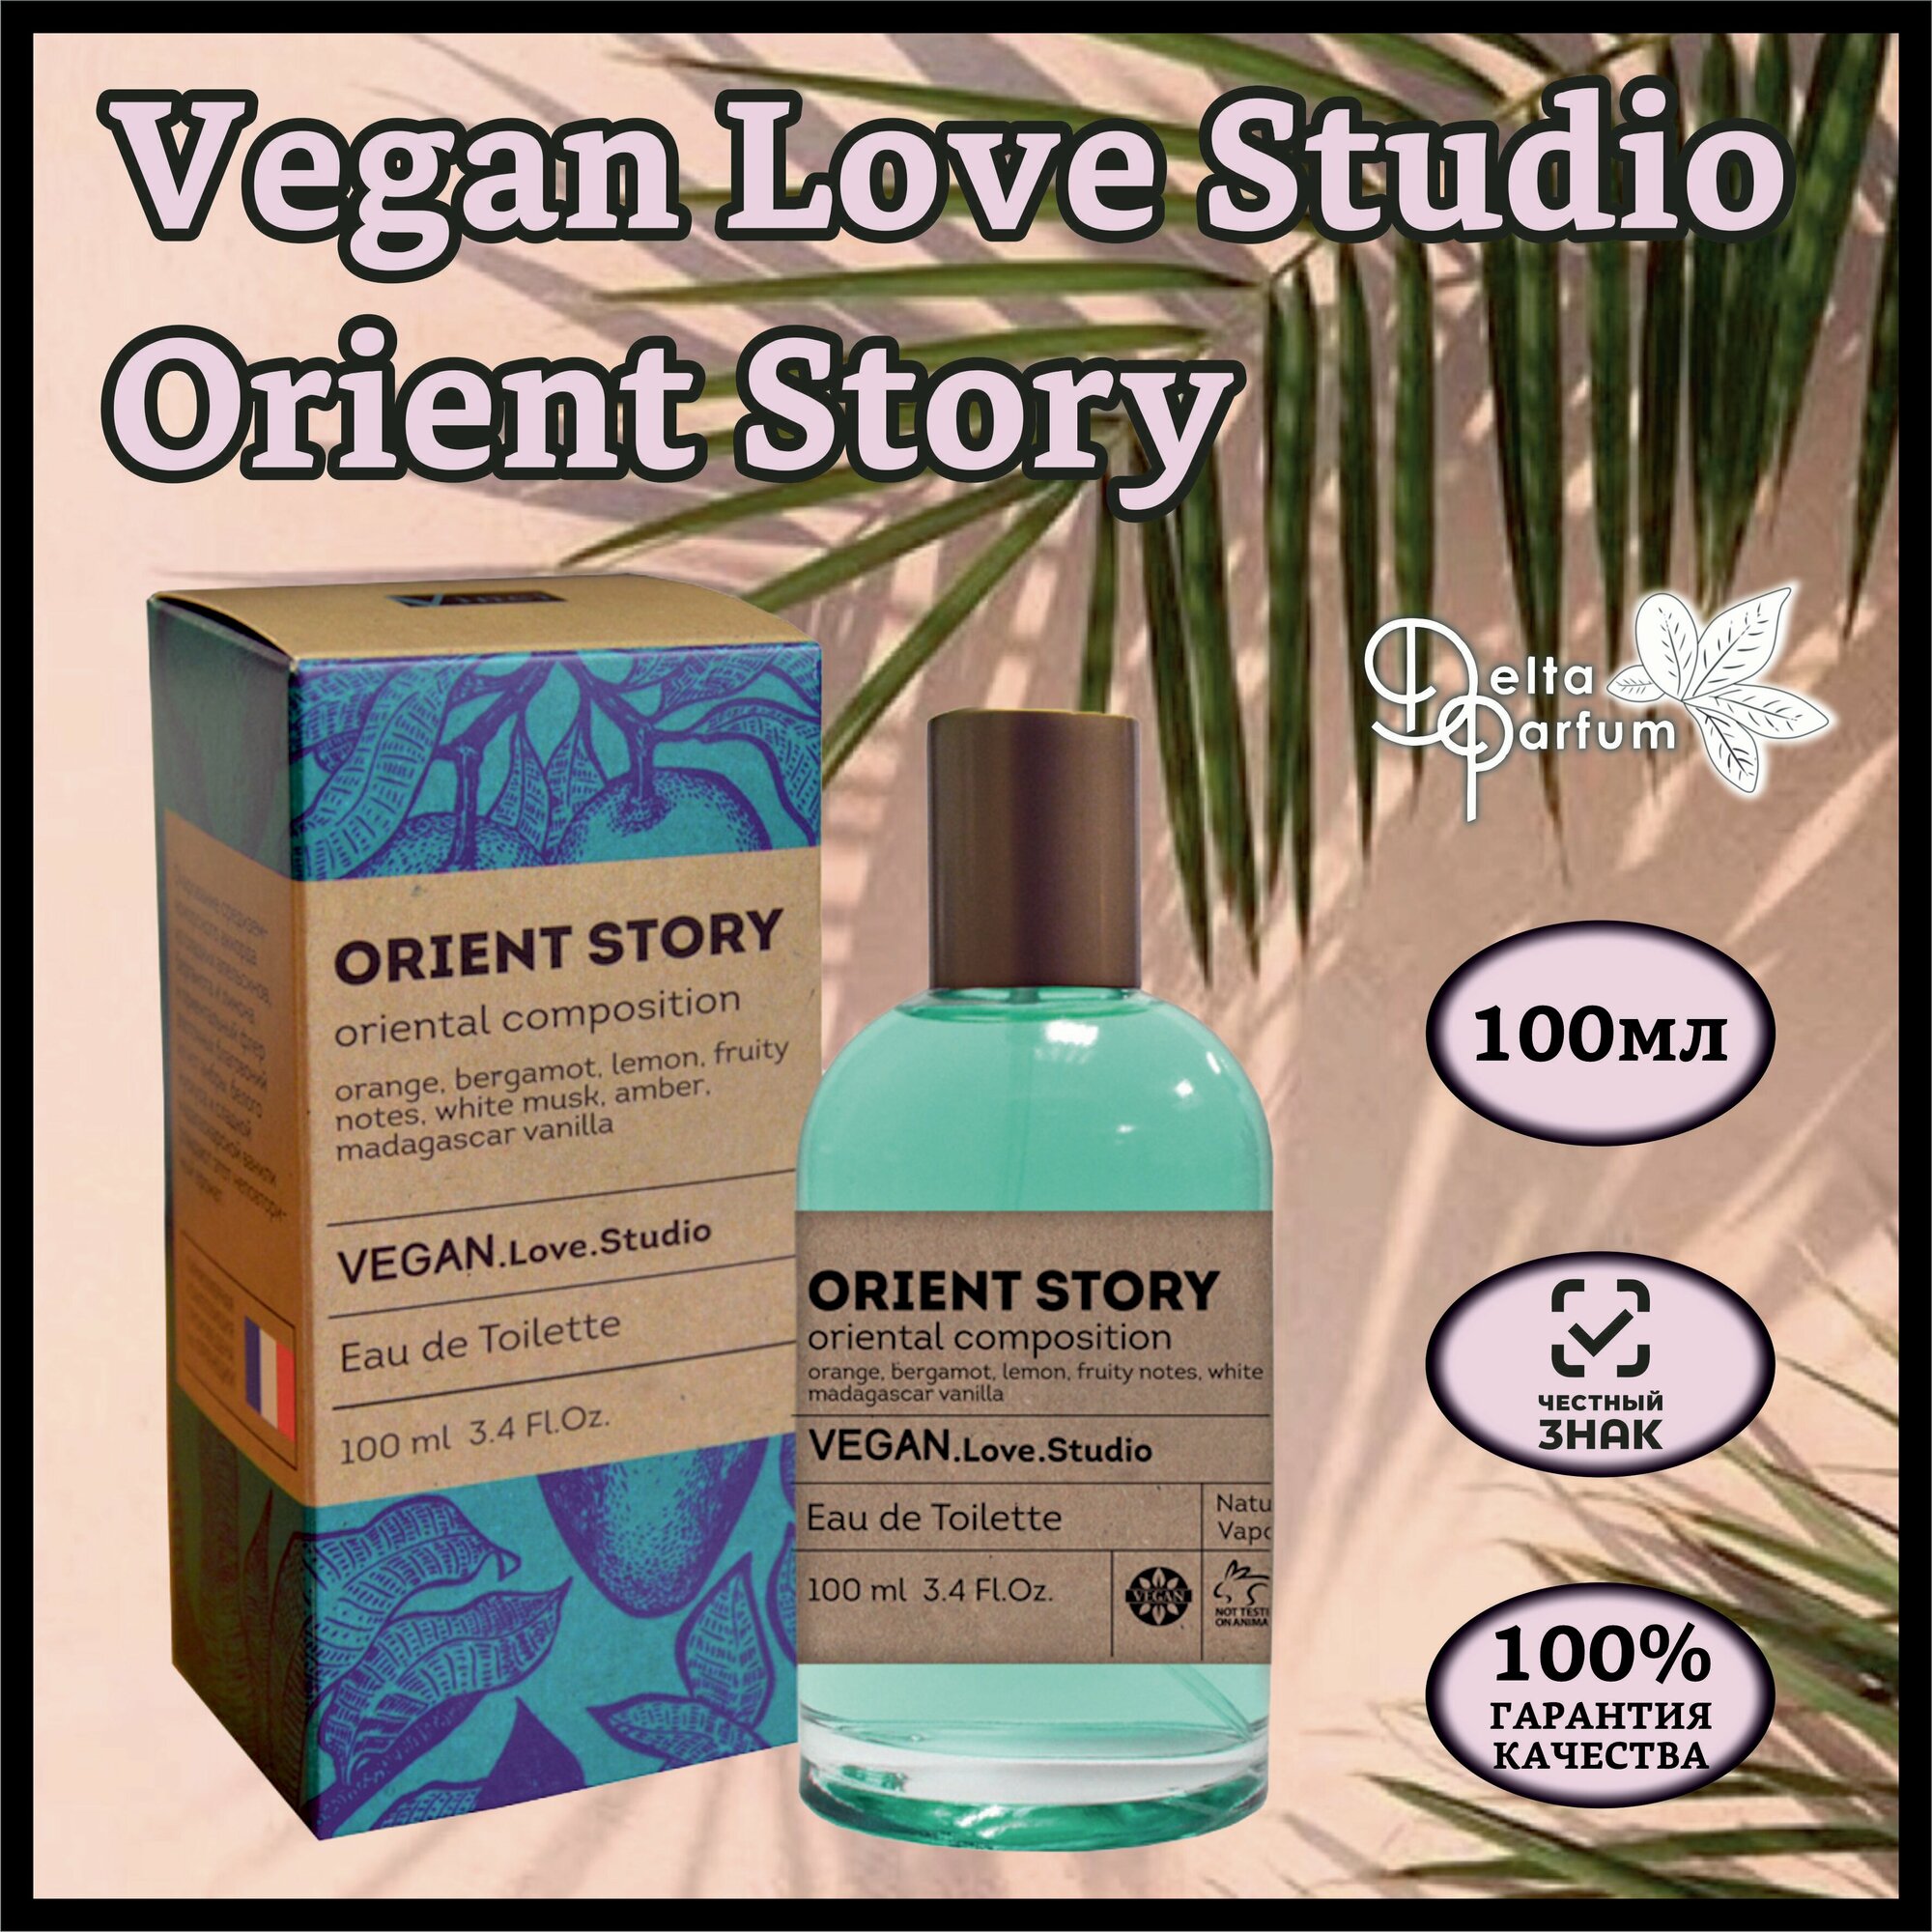 Delta parfum Туалетная вода женская Vegan Love Studio Orient Story, 100мл